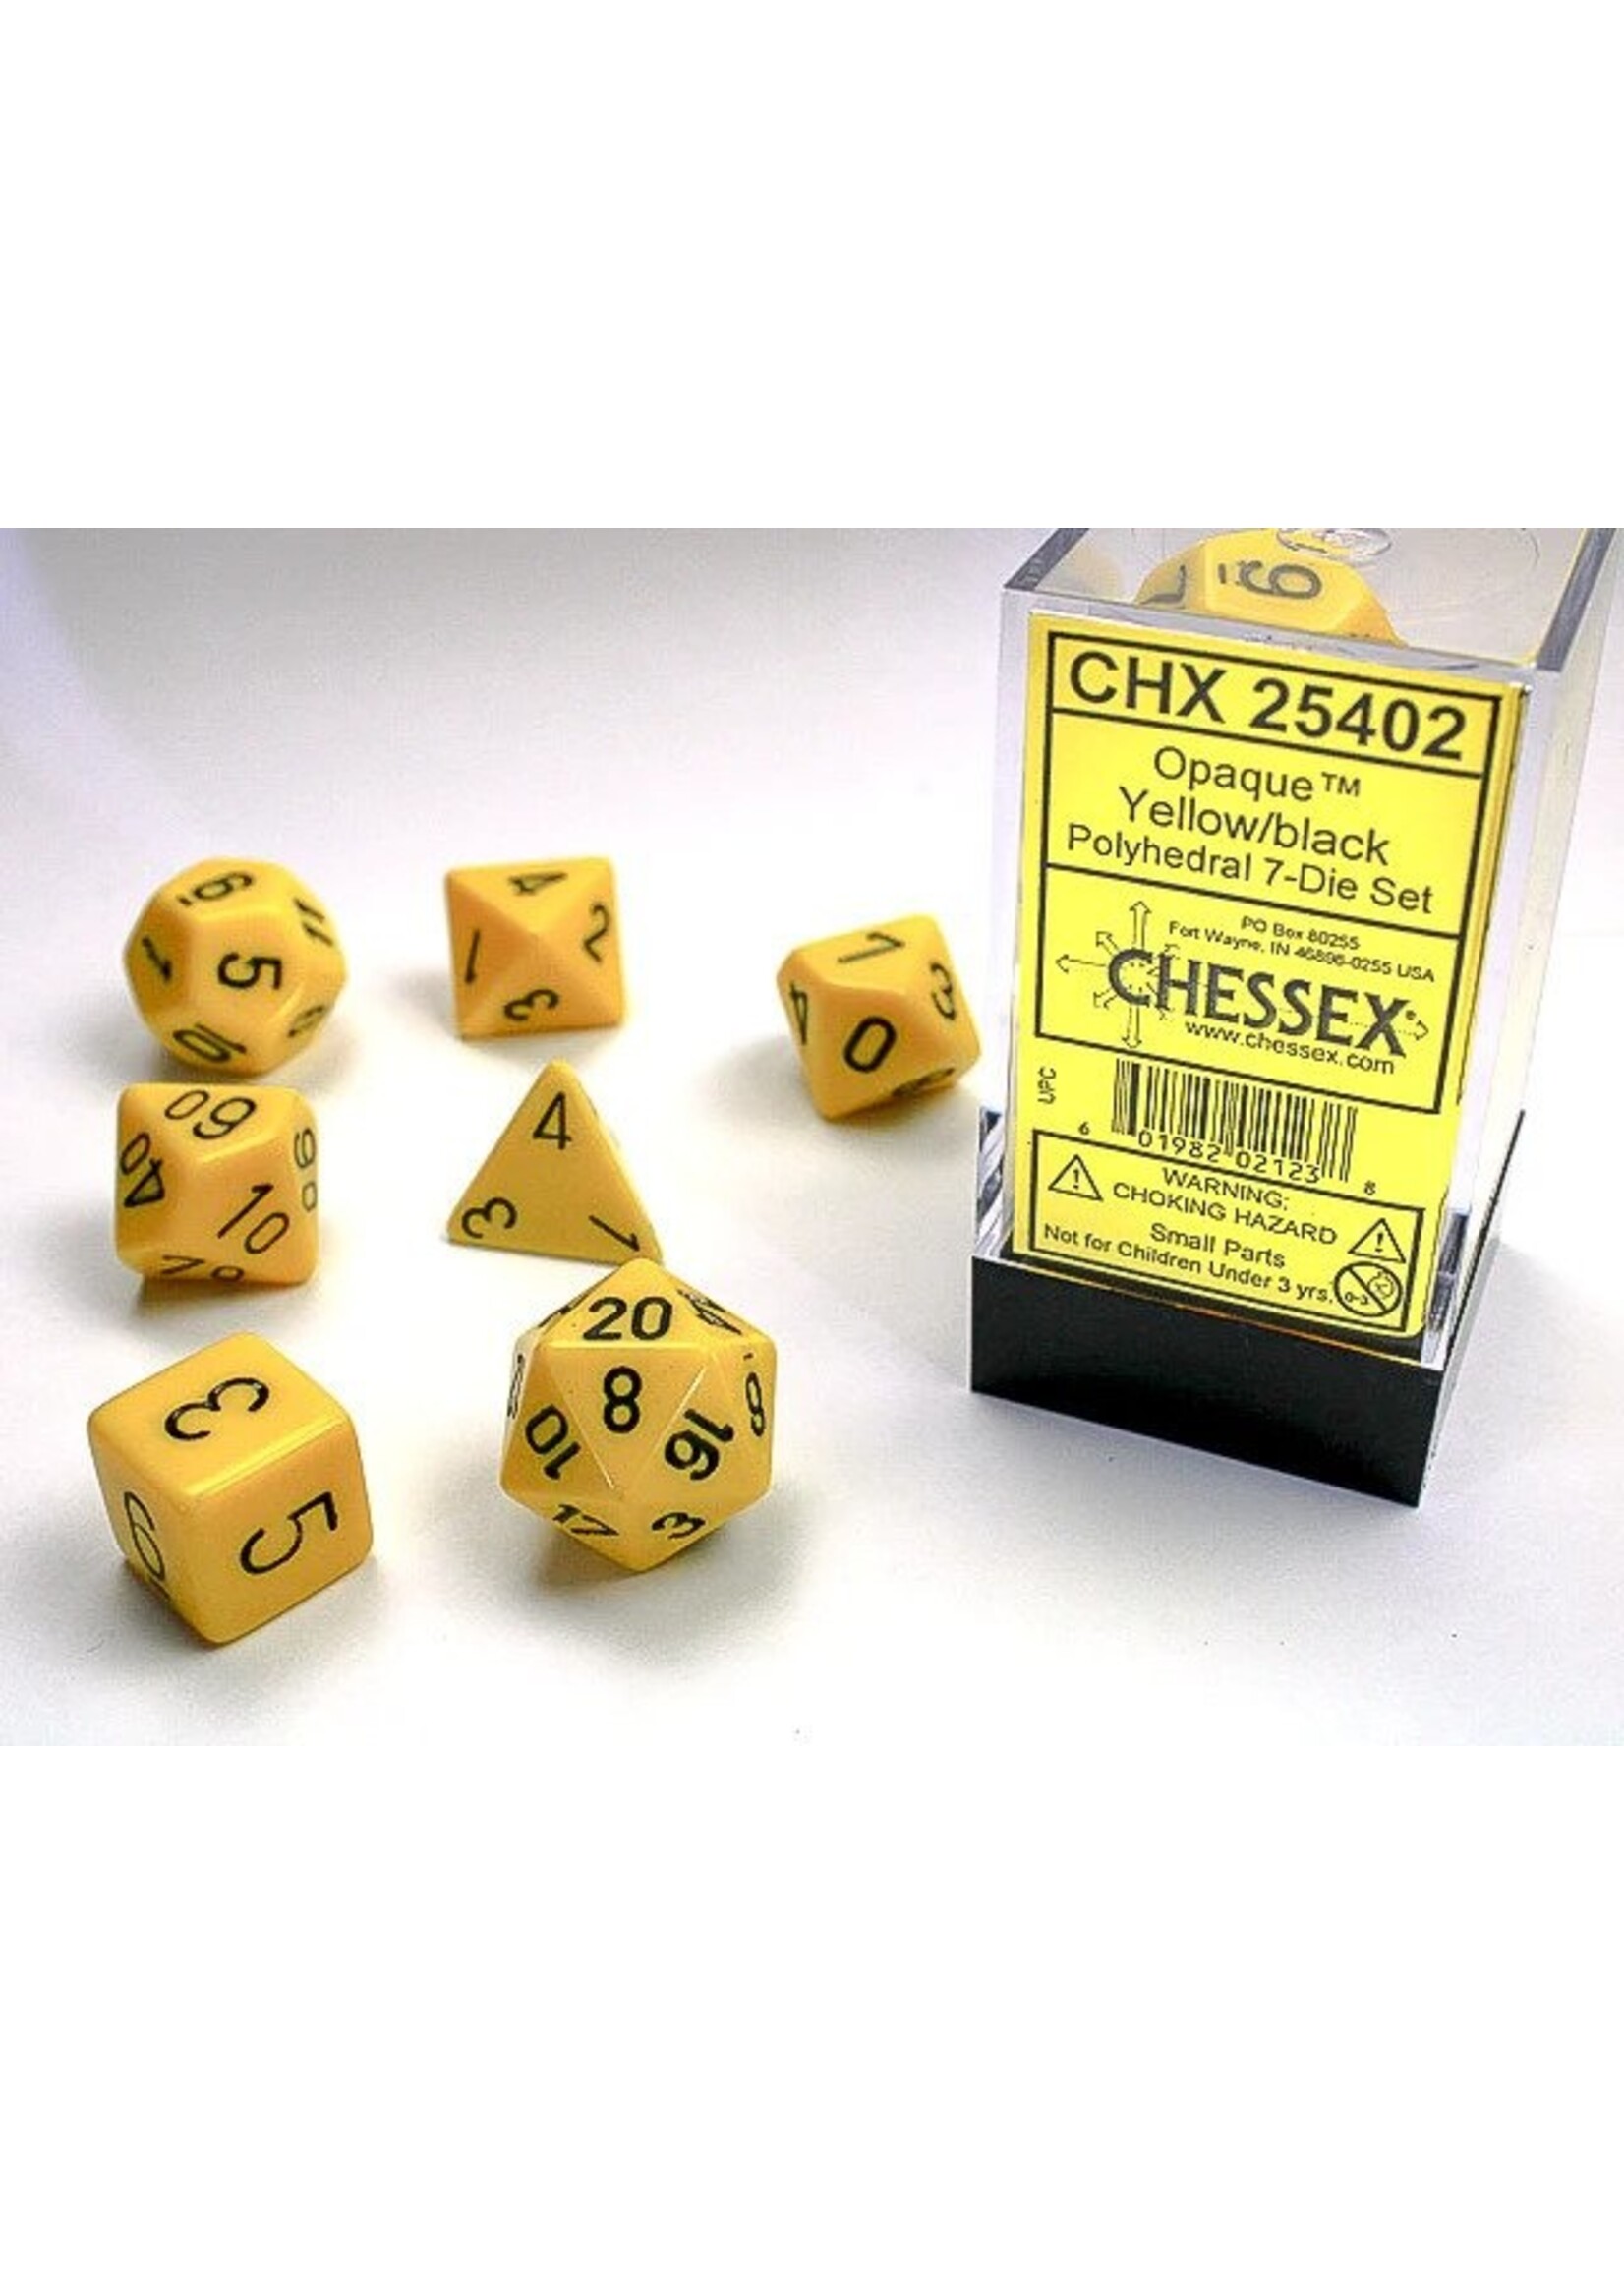 Chessex OPAQ 7die yellow/black